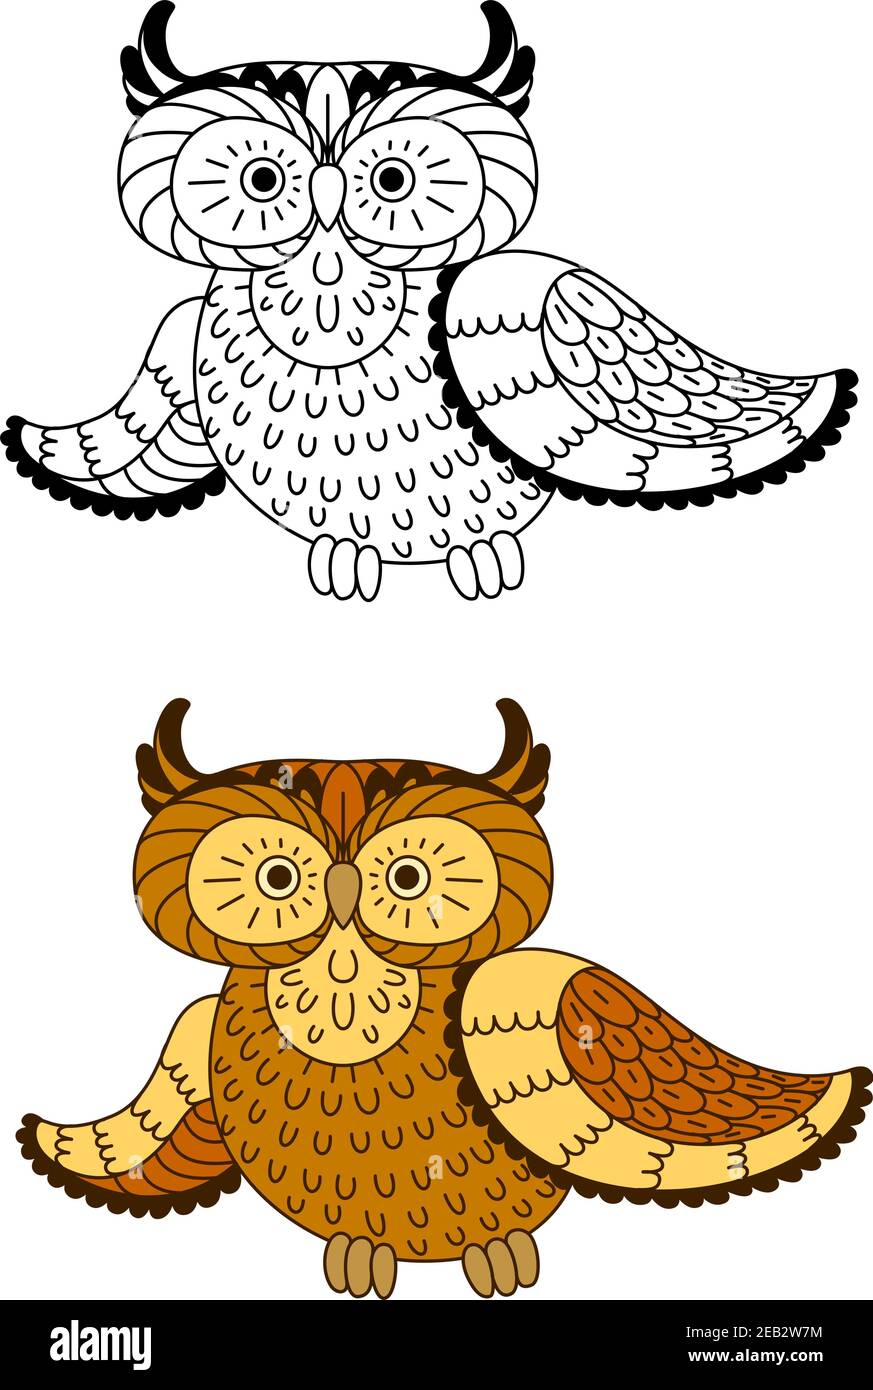 Uccello gufo di cartoni stilizzati con piume marroni e gialle, inclusa la seconda variante con uccello incolore in stile contorno. Per il disegno di tema di Halloween Illustrazione Vettoriale